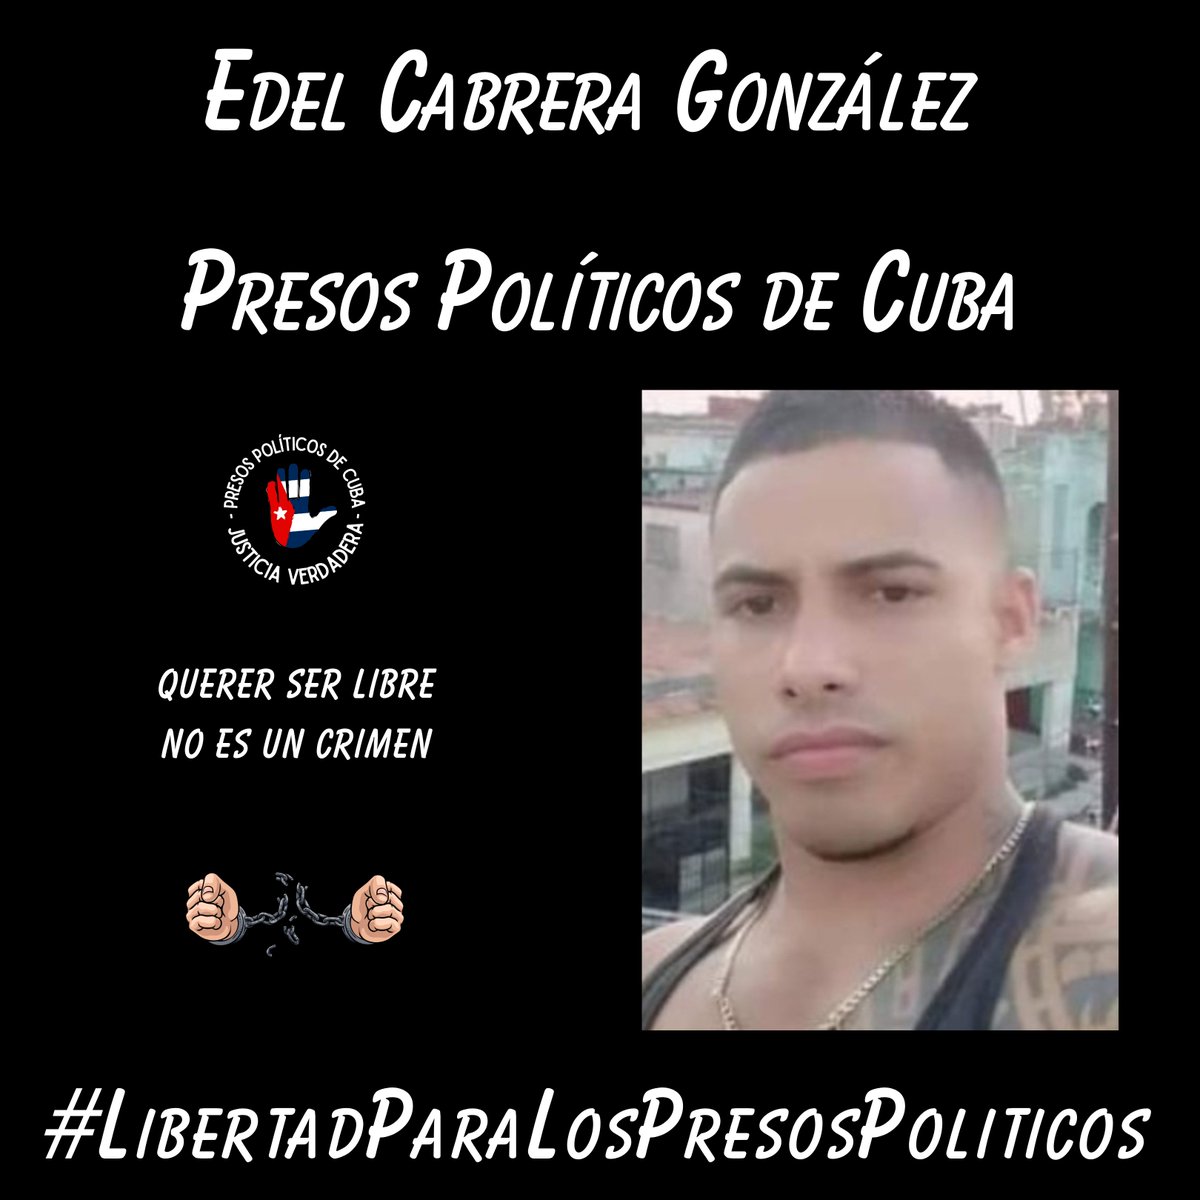 Libertad para Edel Cabrera González. Estamos contigo. Luchamos por ti. No te abandonaremos nunca. . . . #Twittazo #PresosDeCastro #PresosPoliticosDeCuba #Cuba #LibertadParaLosPresosPoliticos